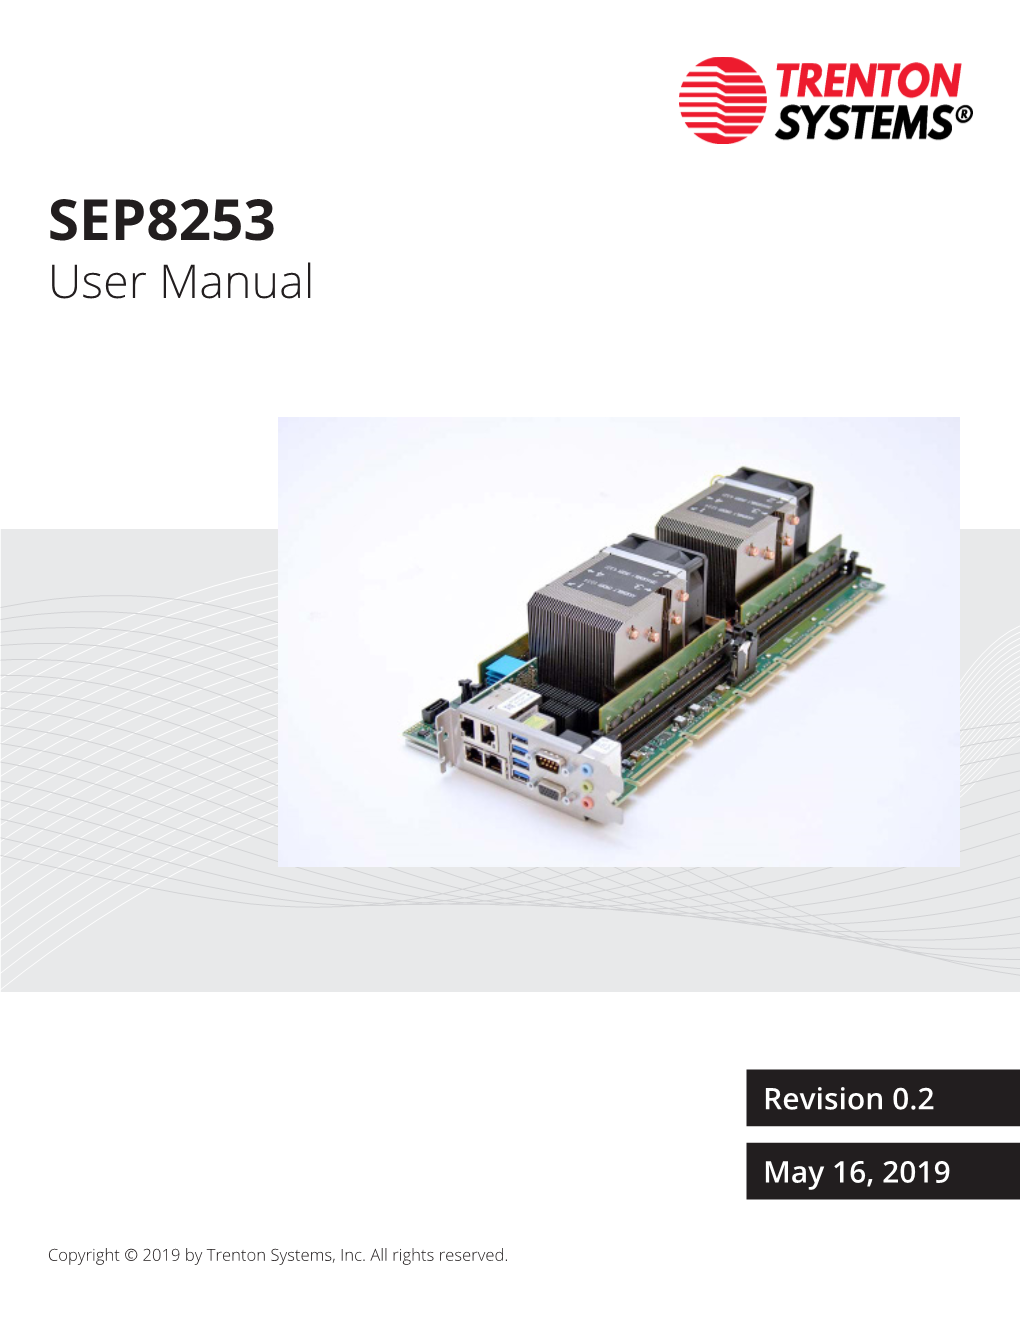 SEP8253 User Manual